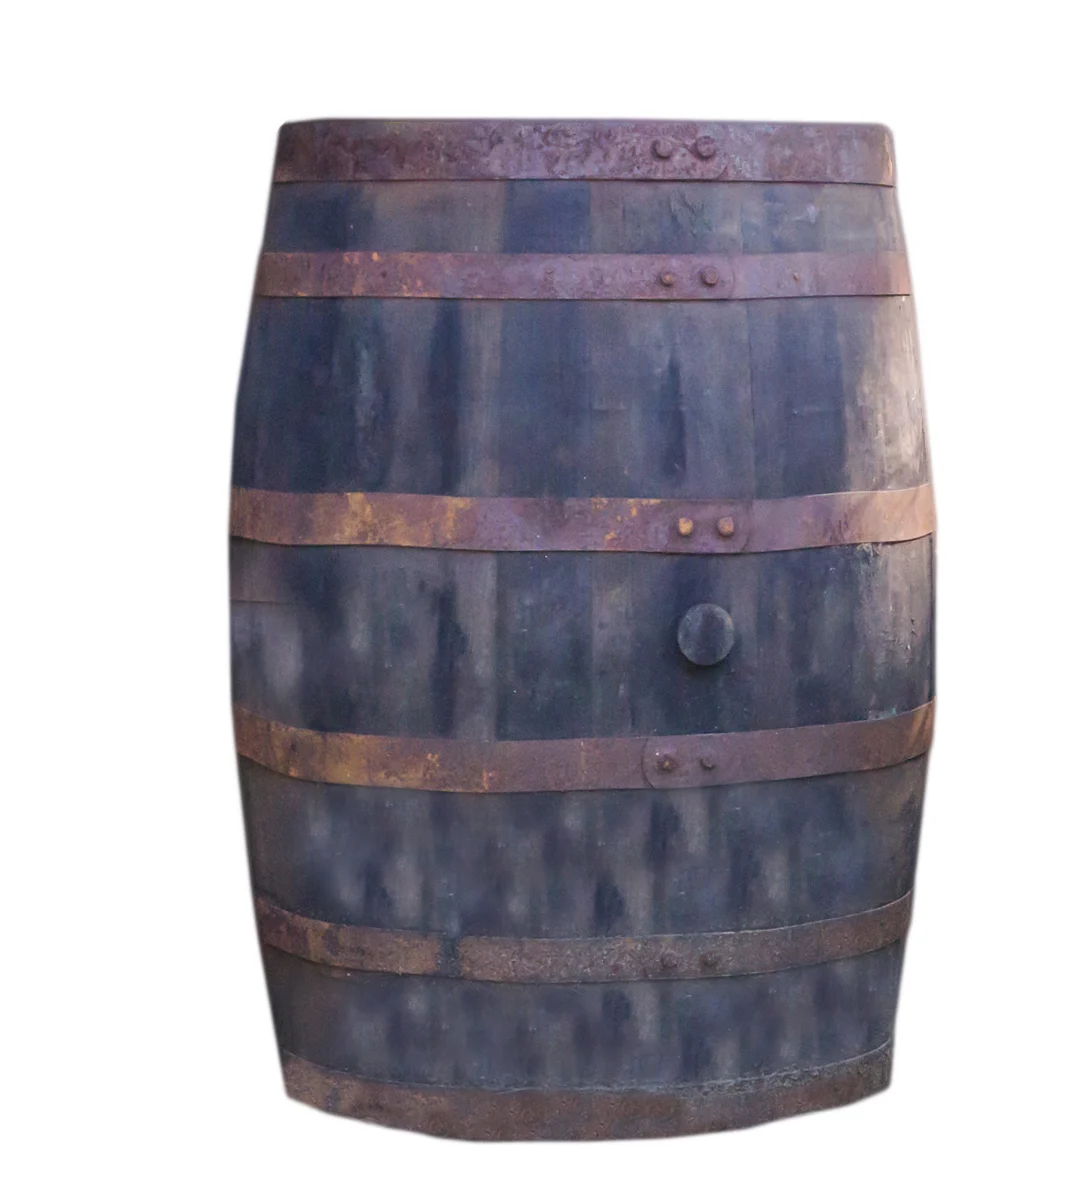 A wooden rain barrel